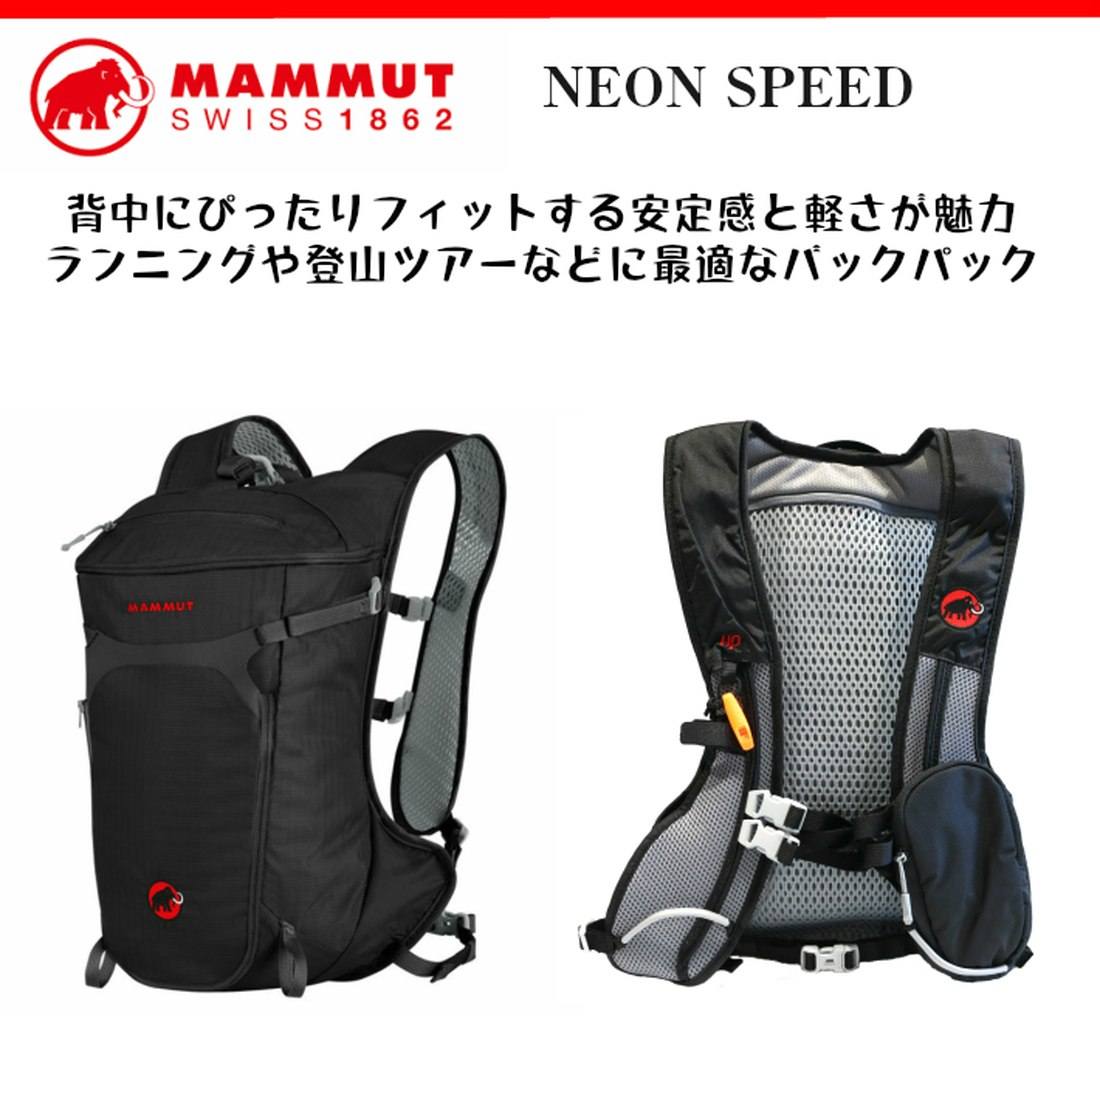 マムート ネオン スピード NEON SPEED 容量:15L - 登山用品